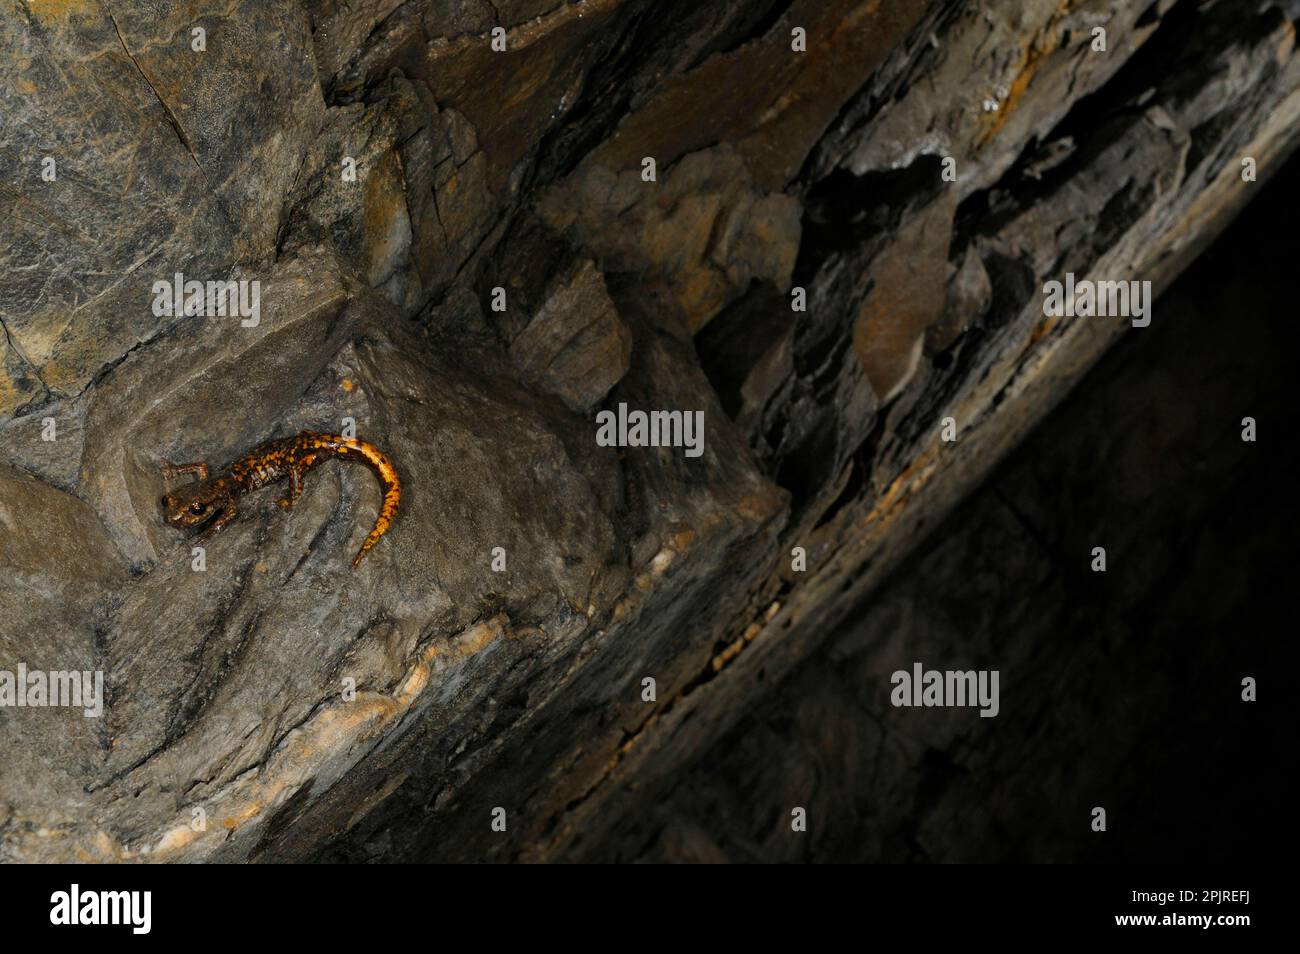 Grotta di Strinati Salamander (Speleomantes strinatii) adulto, riposante sulle rocce in habitat grotta, Italia Foto Stock